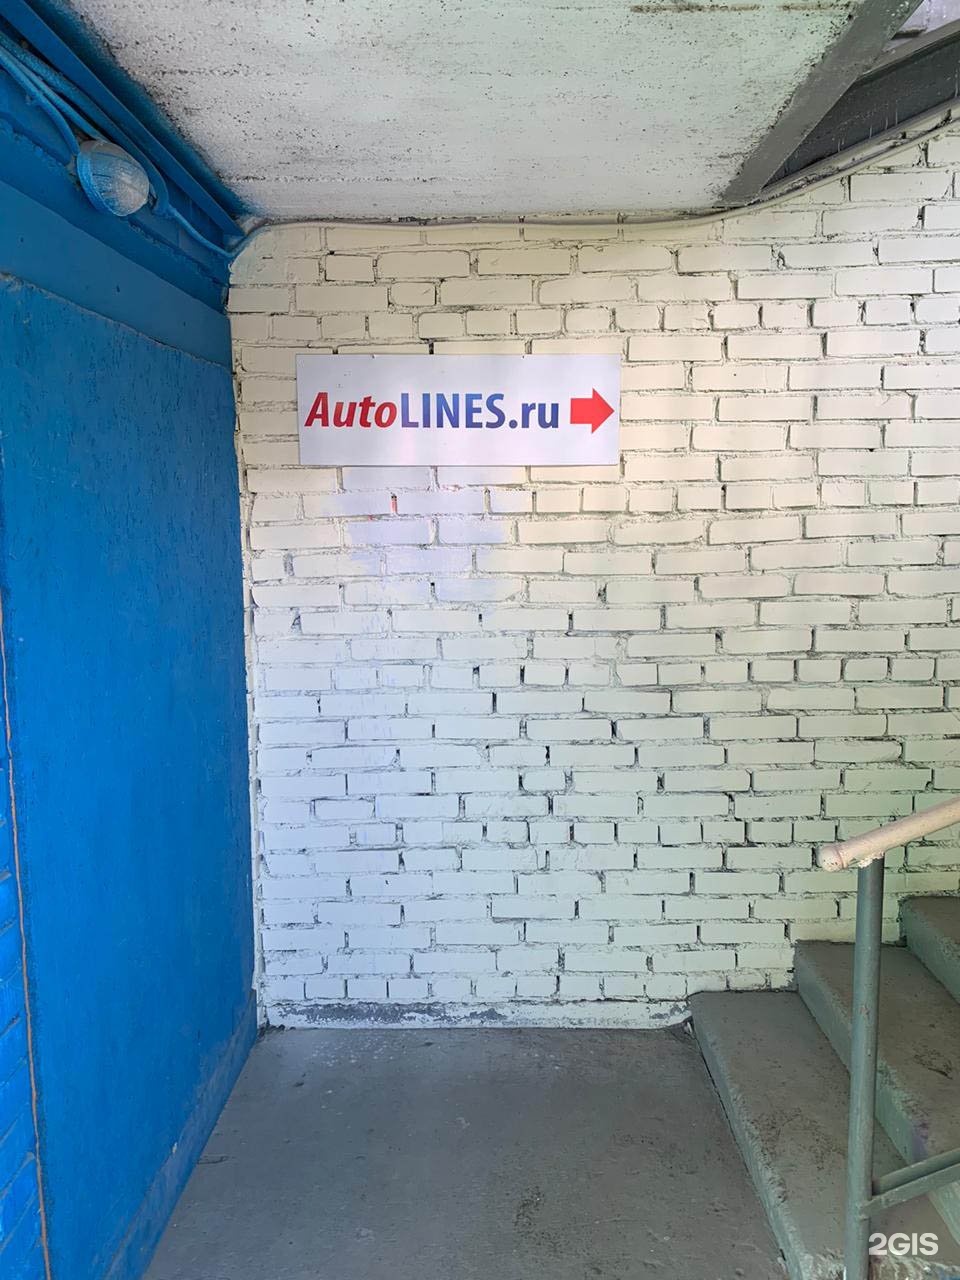 Autolines Ru Интернет Магазин